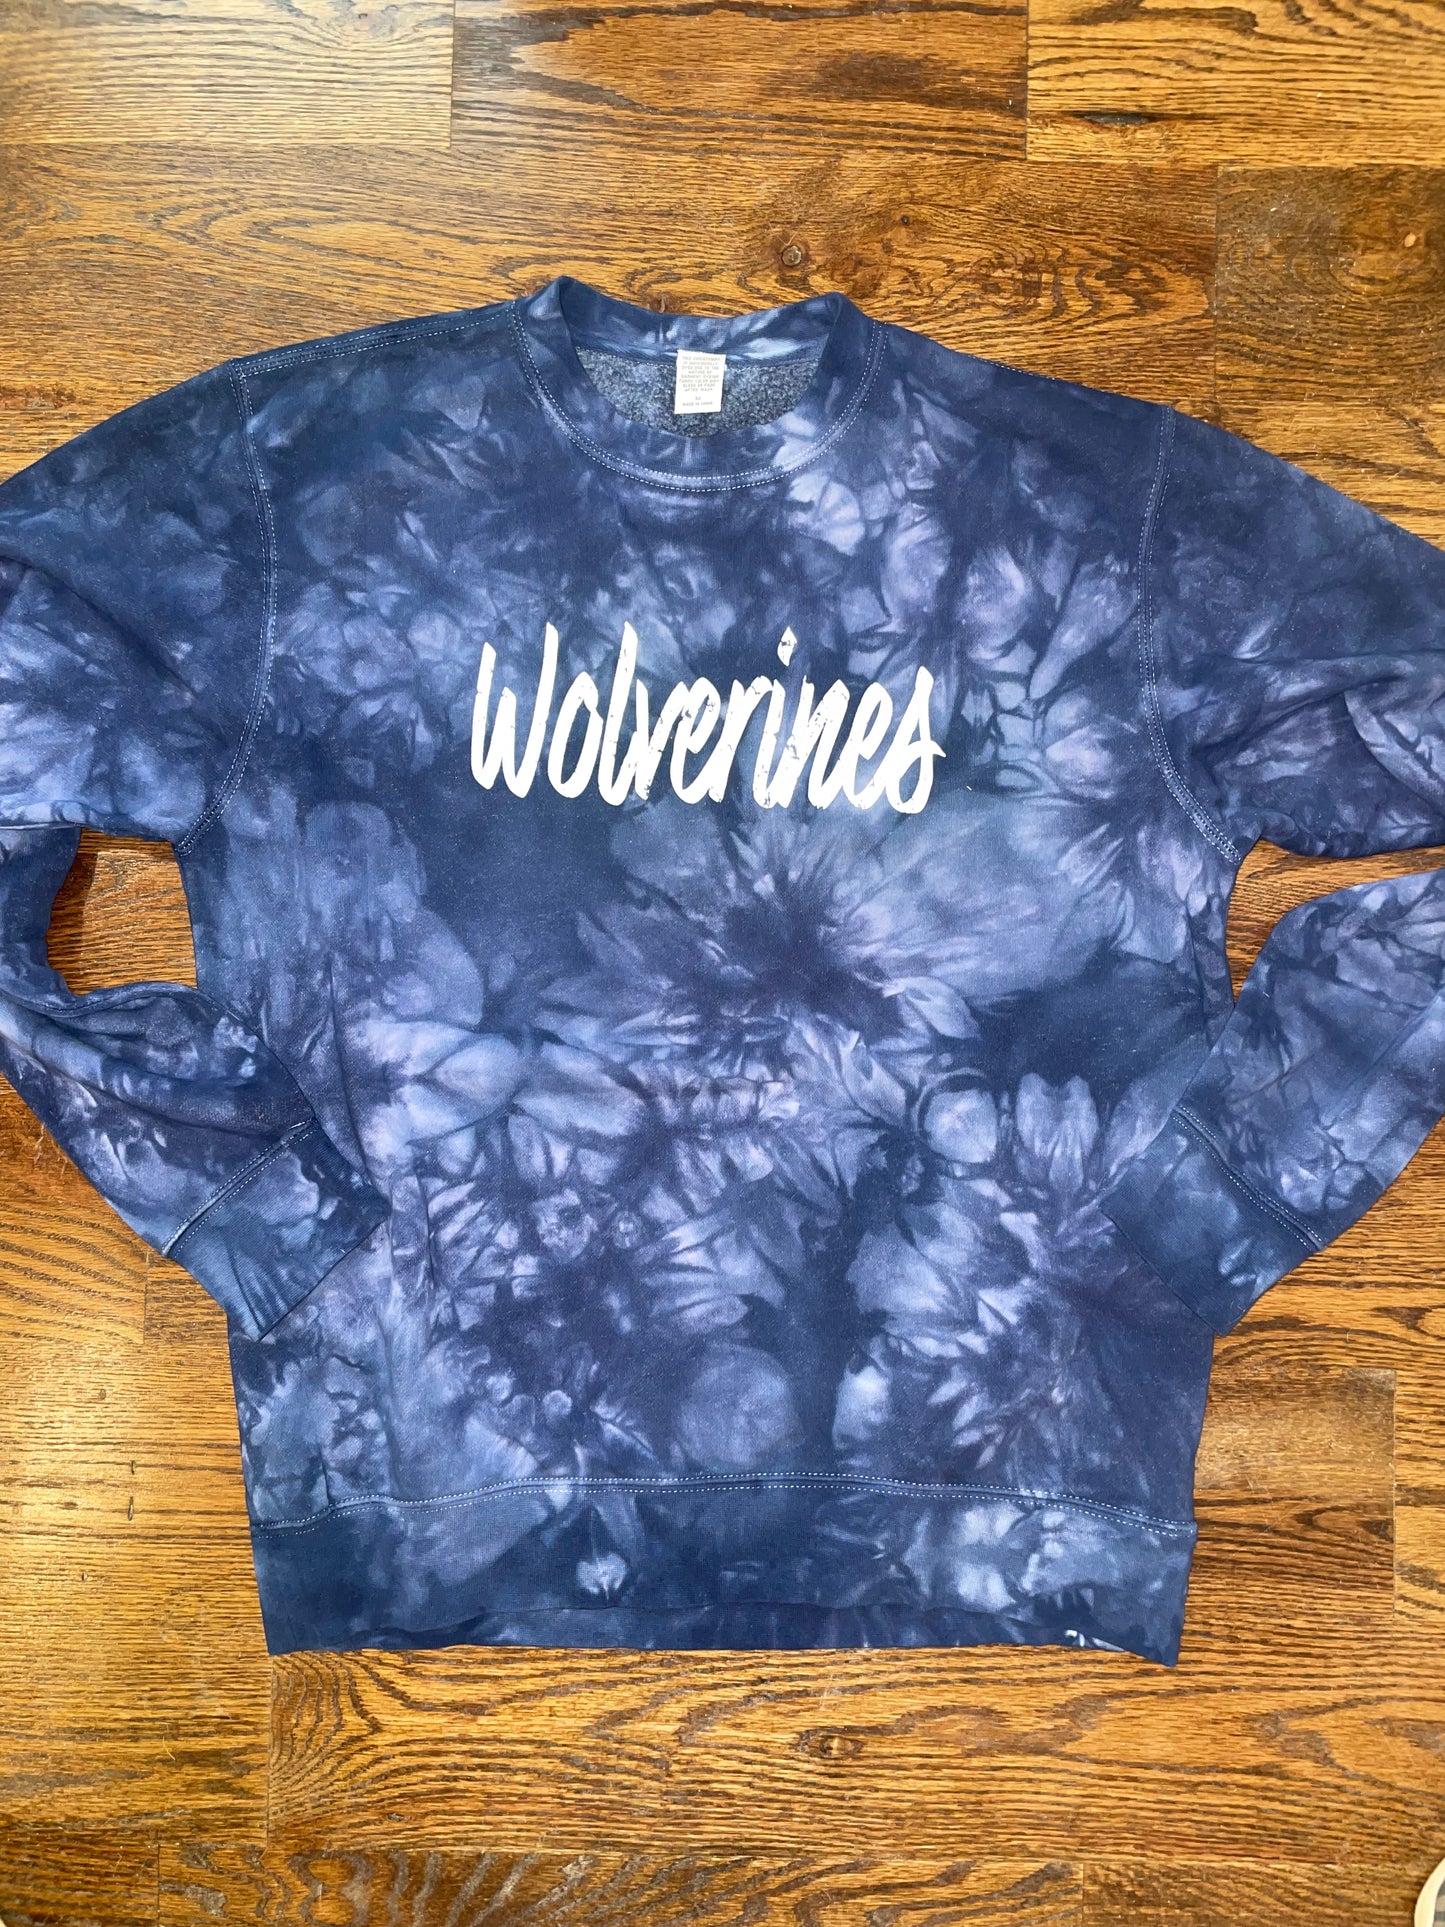 Wolverines Tie Dye sweatshirt